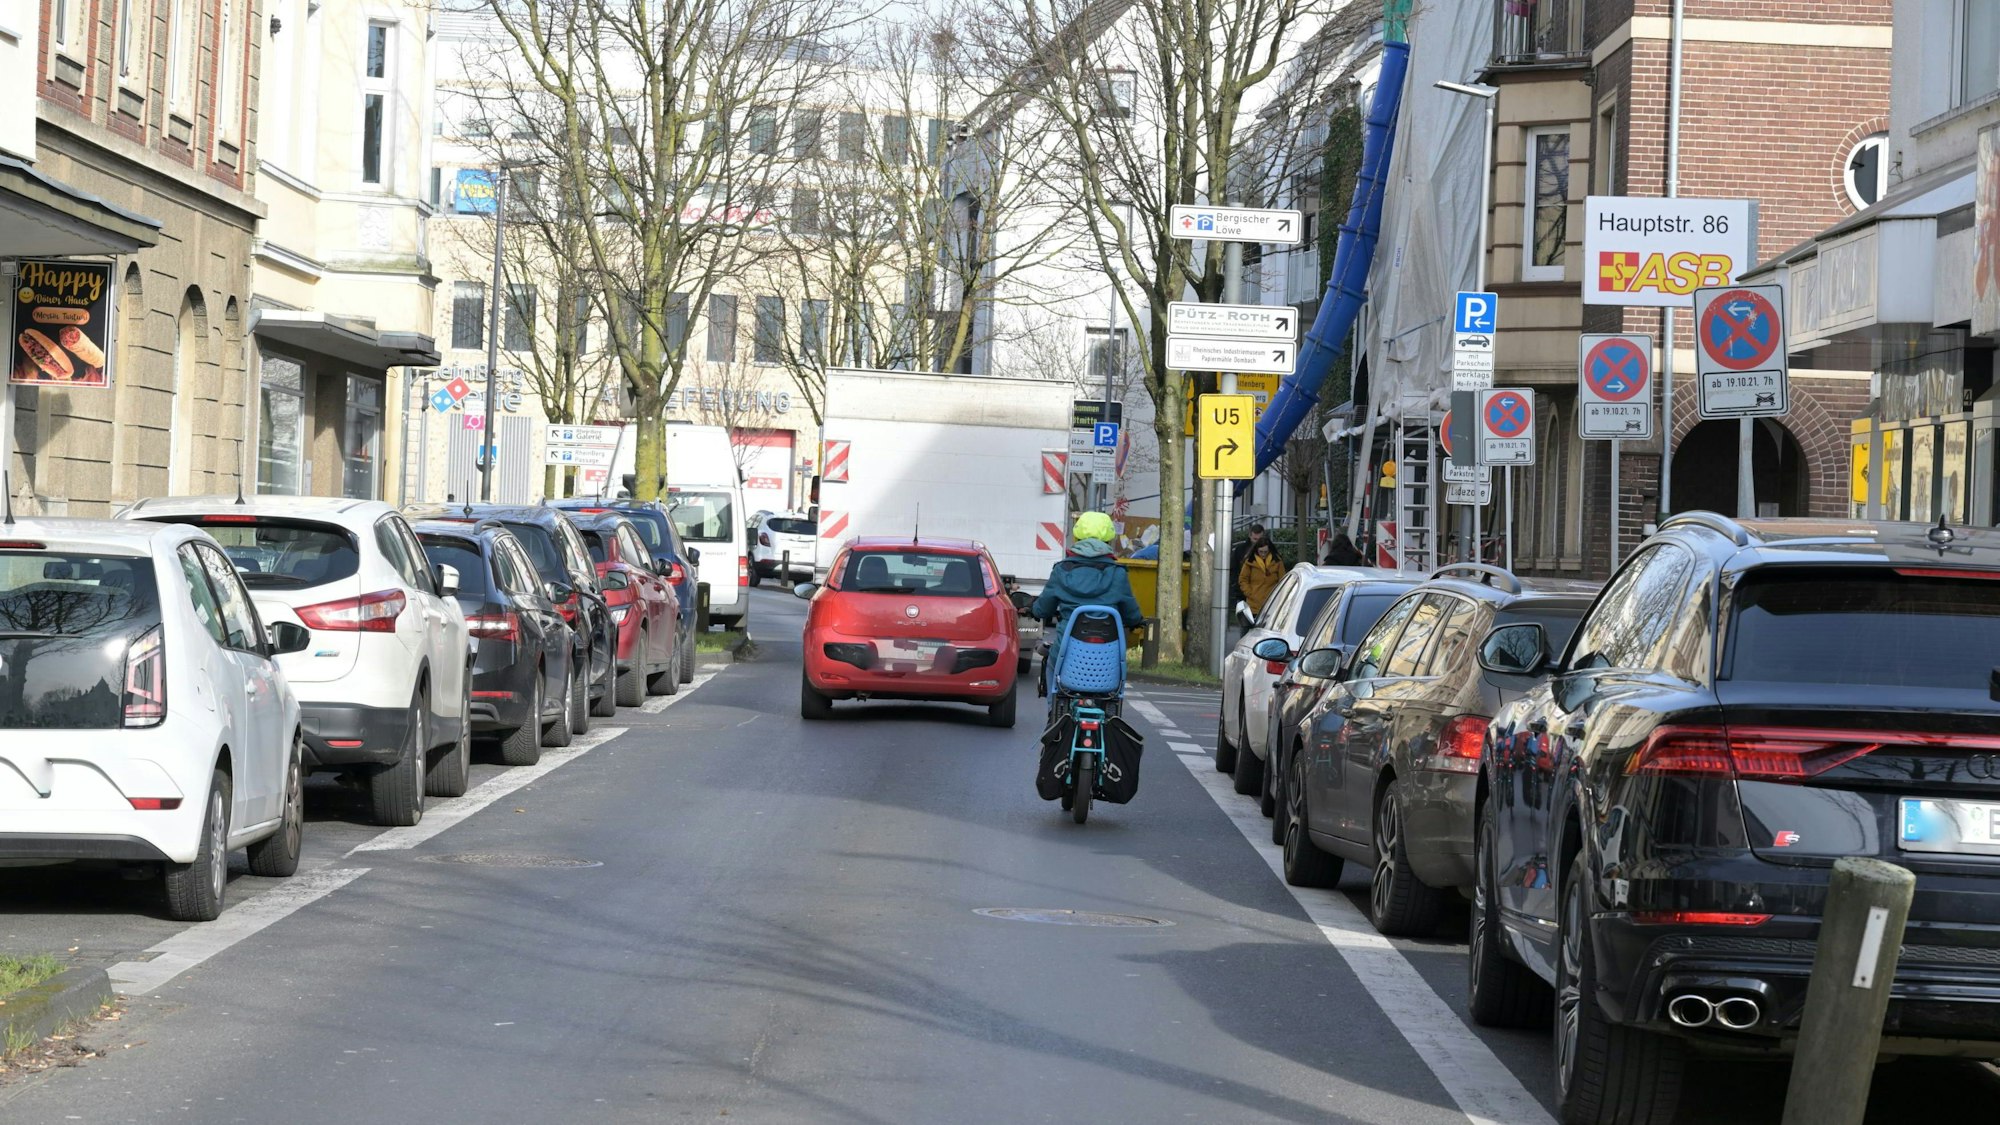 Ein Radfahrer fährt auf der Fahrbahn der unteren Hauptstraße. vor ihm fährt ein rotes Auto.